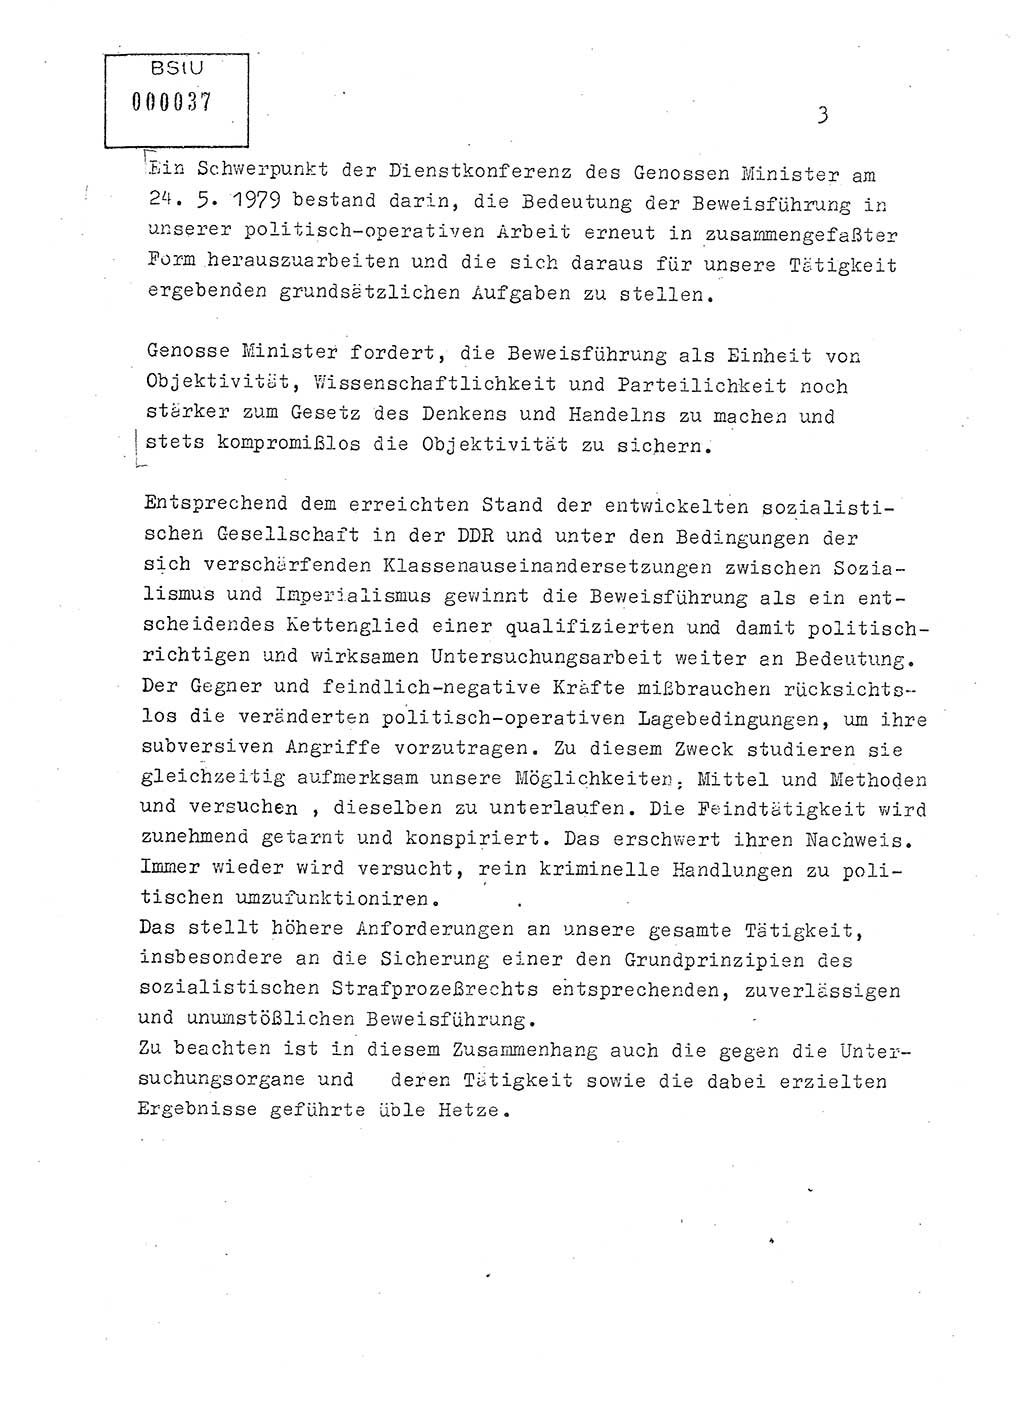 Lektion Ministerium für Staatssicherheit (MfS) [Deutsche Demokratische Republik (DDR)], Hauptabteilung (HA) Ⅸ, Berlin 1979, Seite 3 (Lekt. Bew.-Fü. EV MfS DDR HA Ⅸ 1979, S. 3)